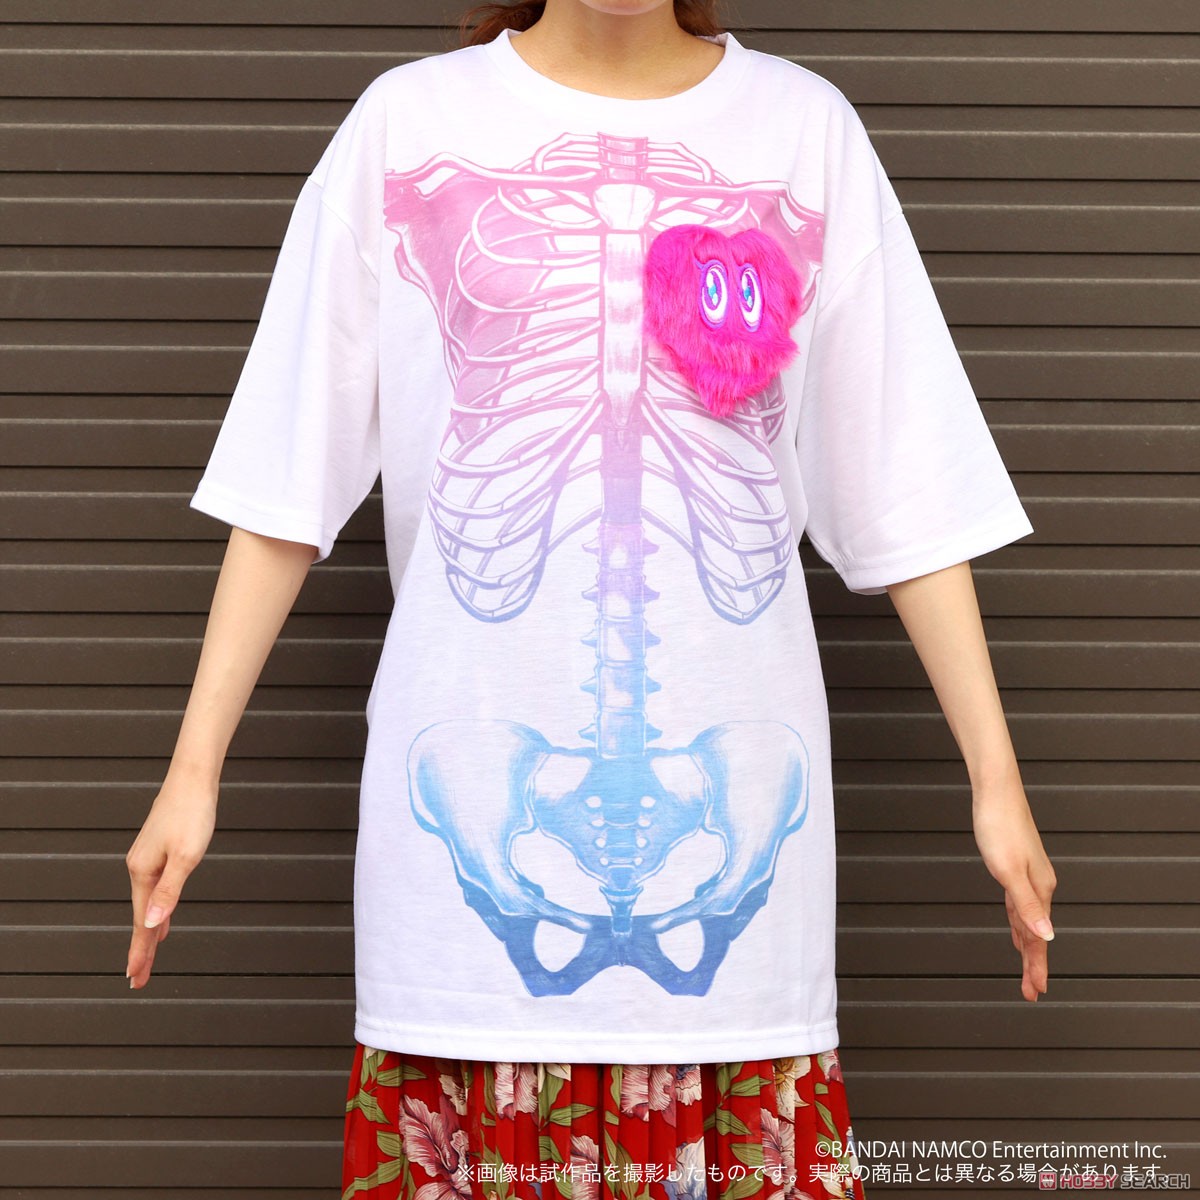 「アイドルマスター シンデレラガールズ」 Tシャツ/夢見りあむTシャツ XLサイズ (キャラクターグッズ) その他の画像1